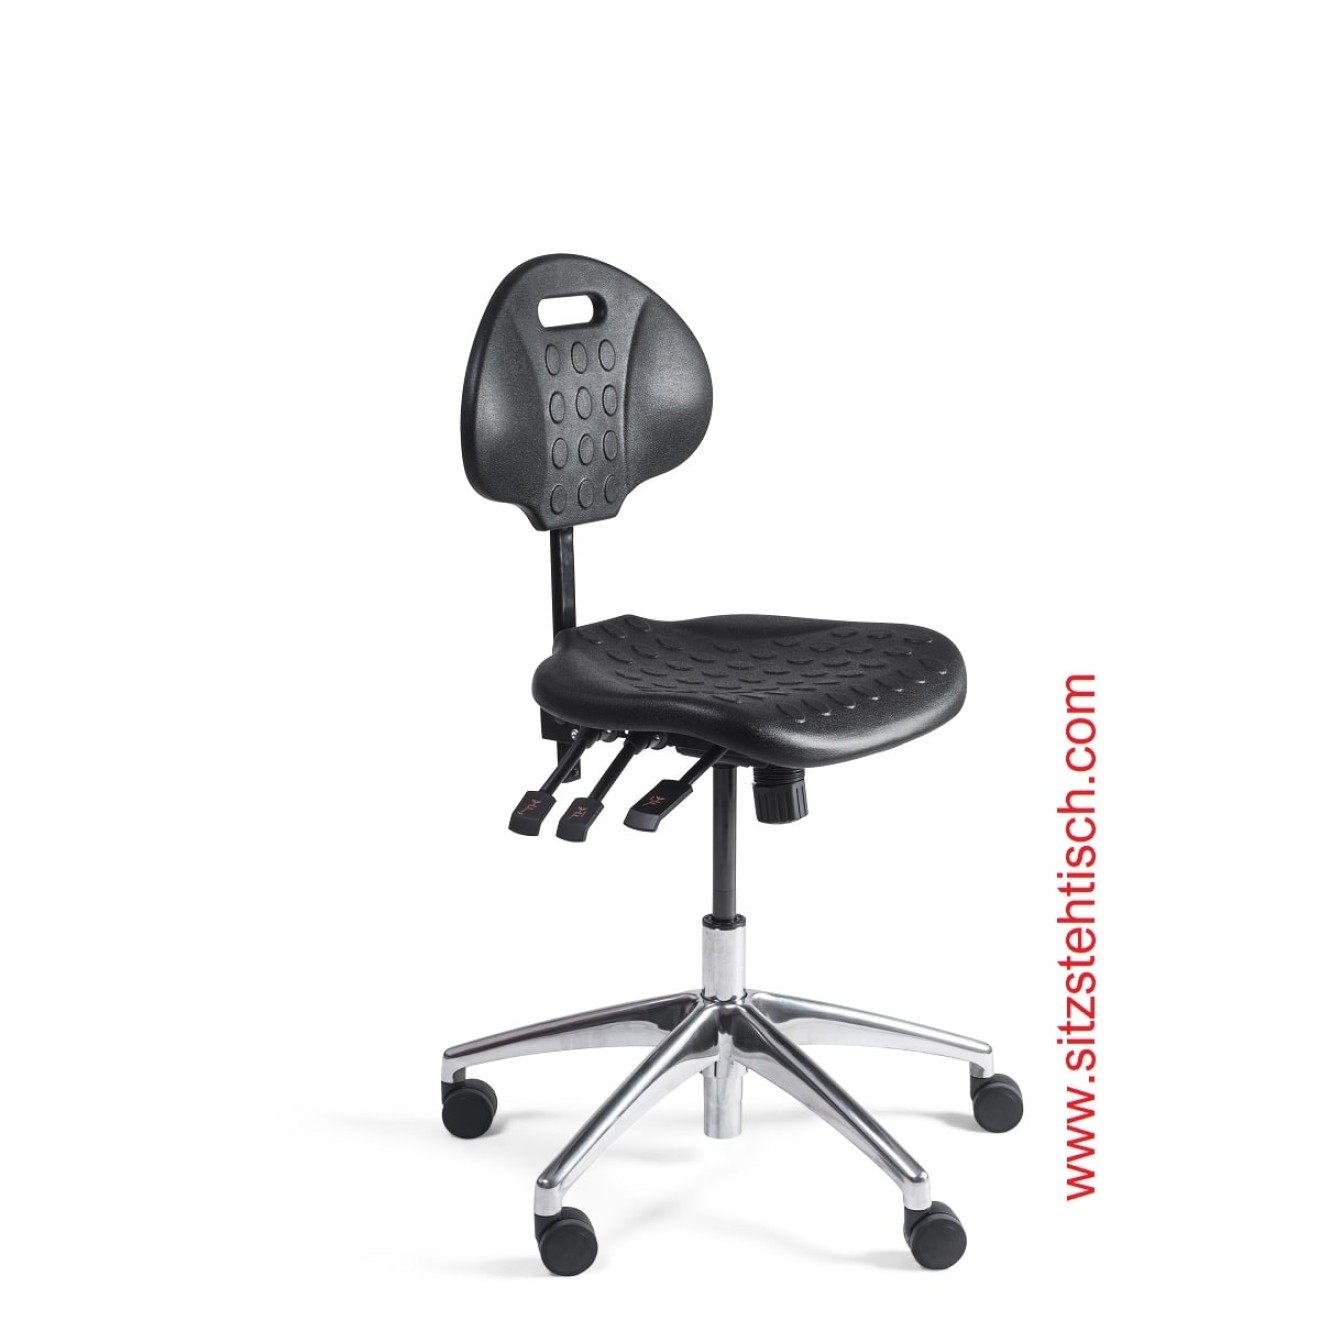 Arbeitsstuhl niedrig - Rücken- und Sitzwinkelverstellung - Sitz- und Rücken aus PU Schaum schwarz - Fußkreuz Aluminium mit Rollen - 5 Jahre Garantie -100280